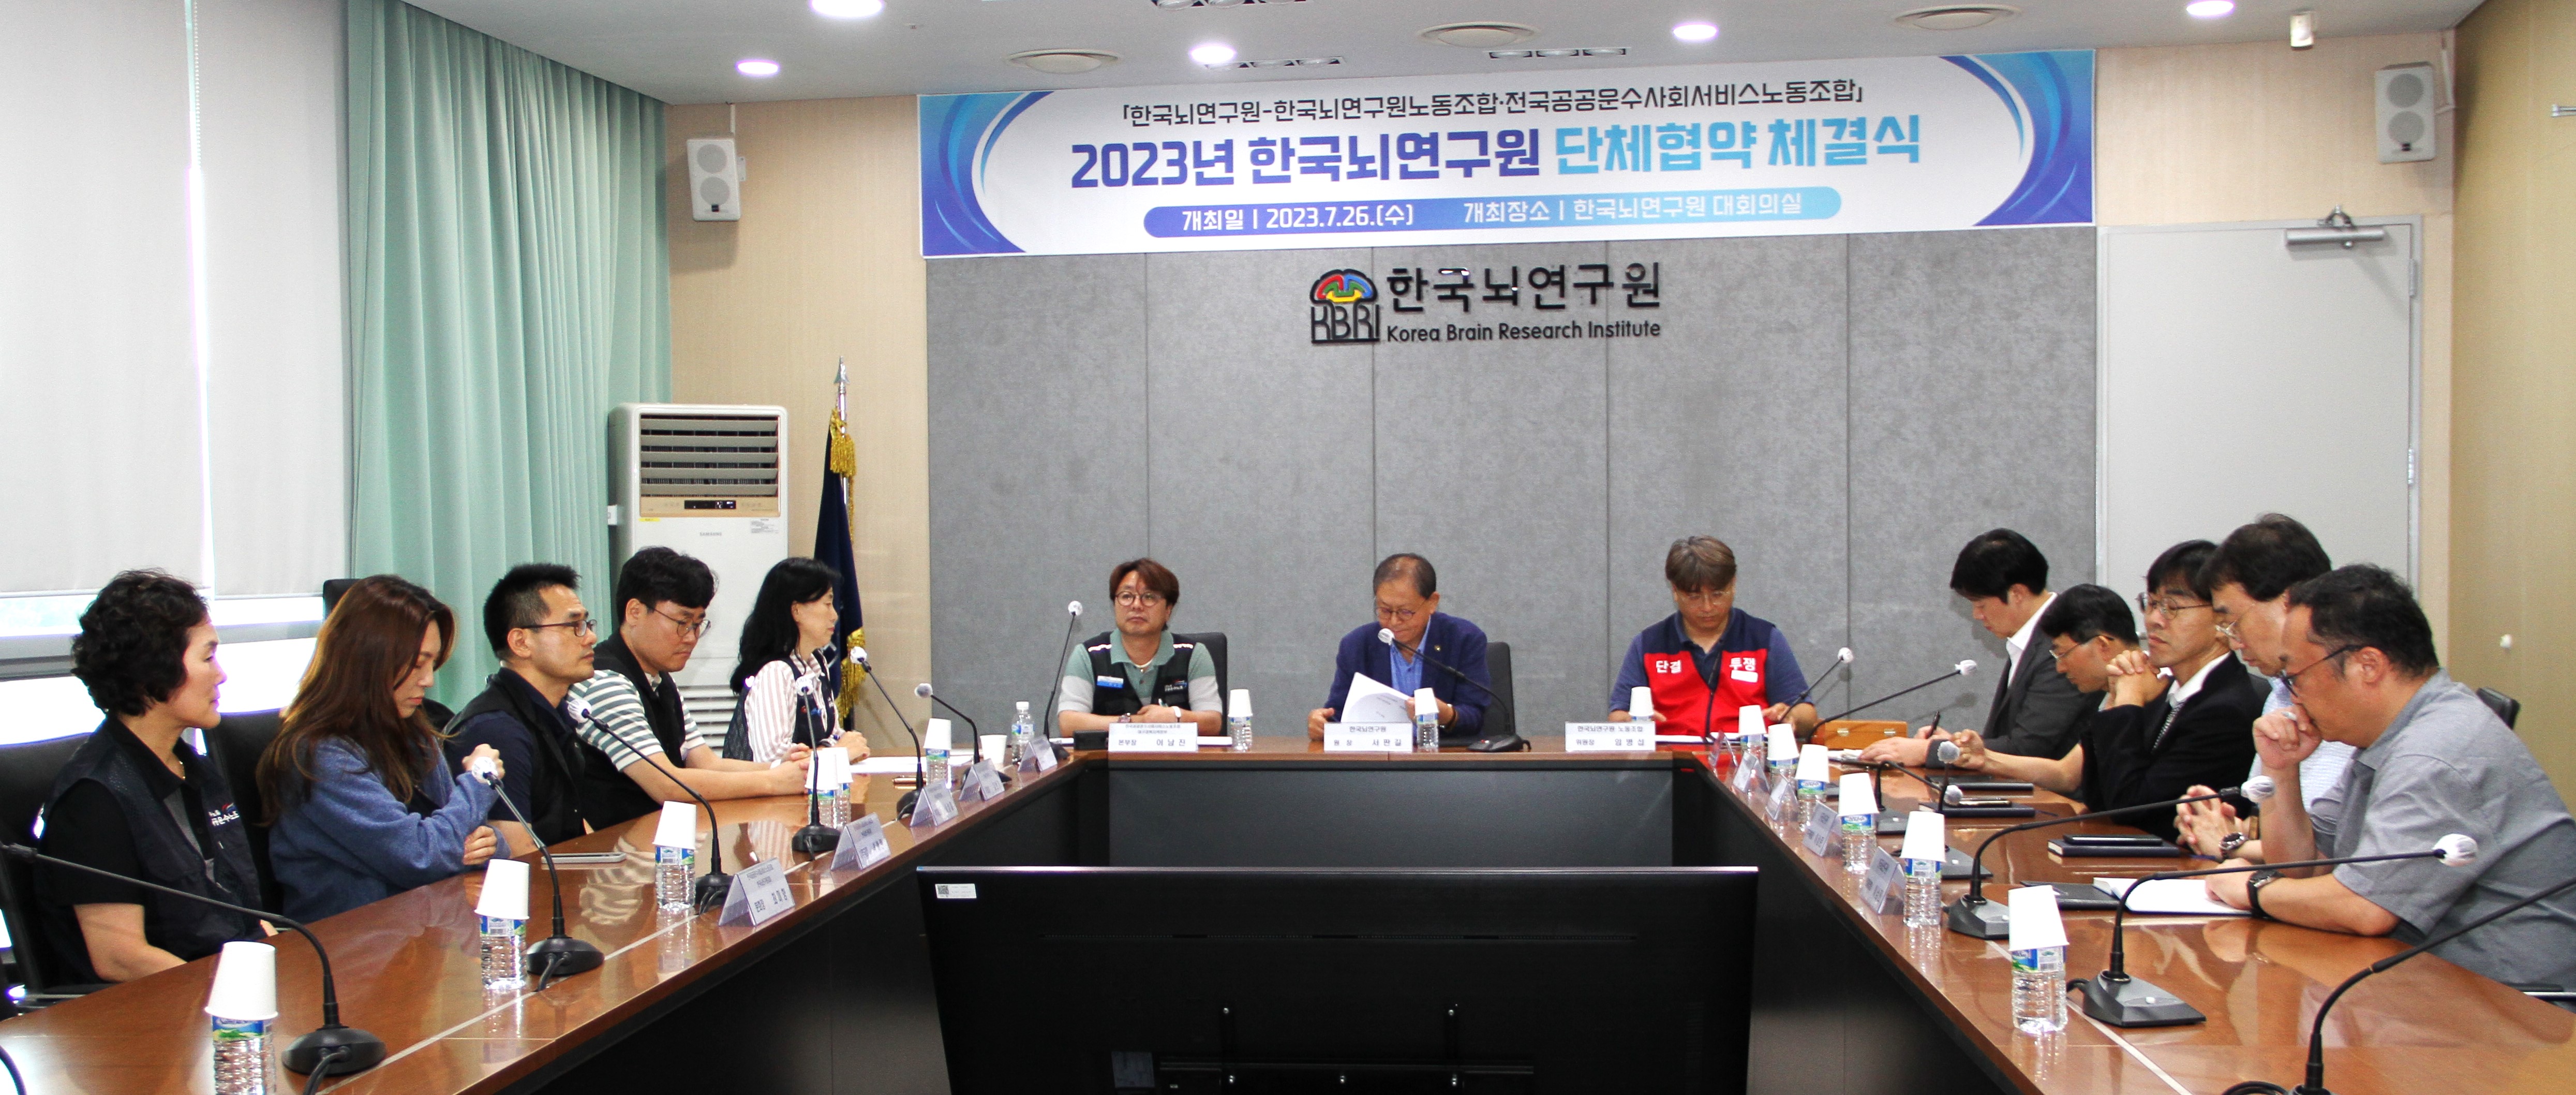 2023년 한국뇌연구원 단체협약 체결식